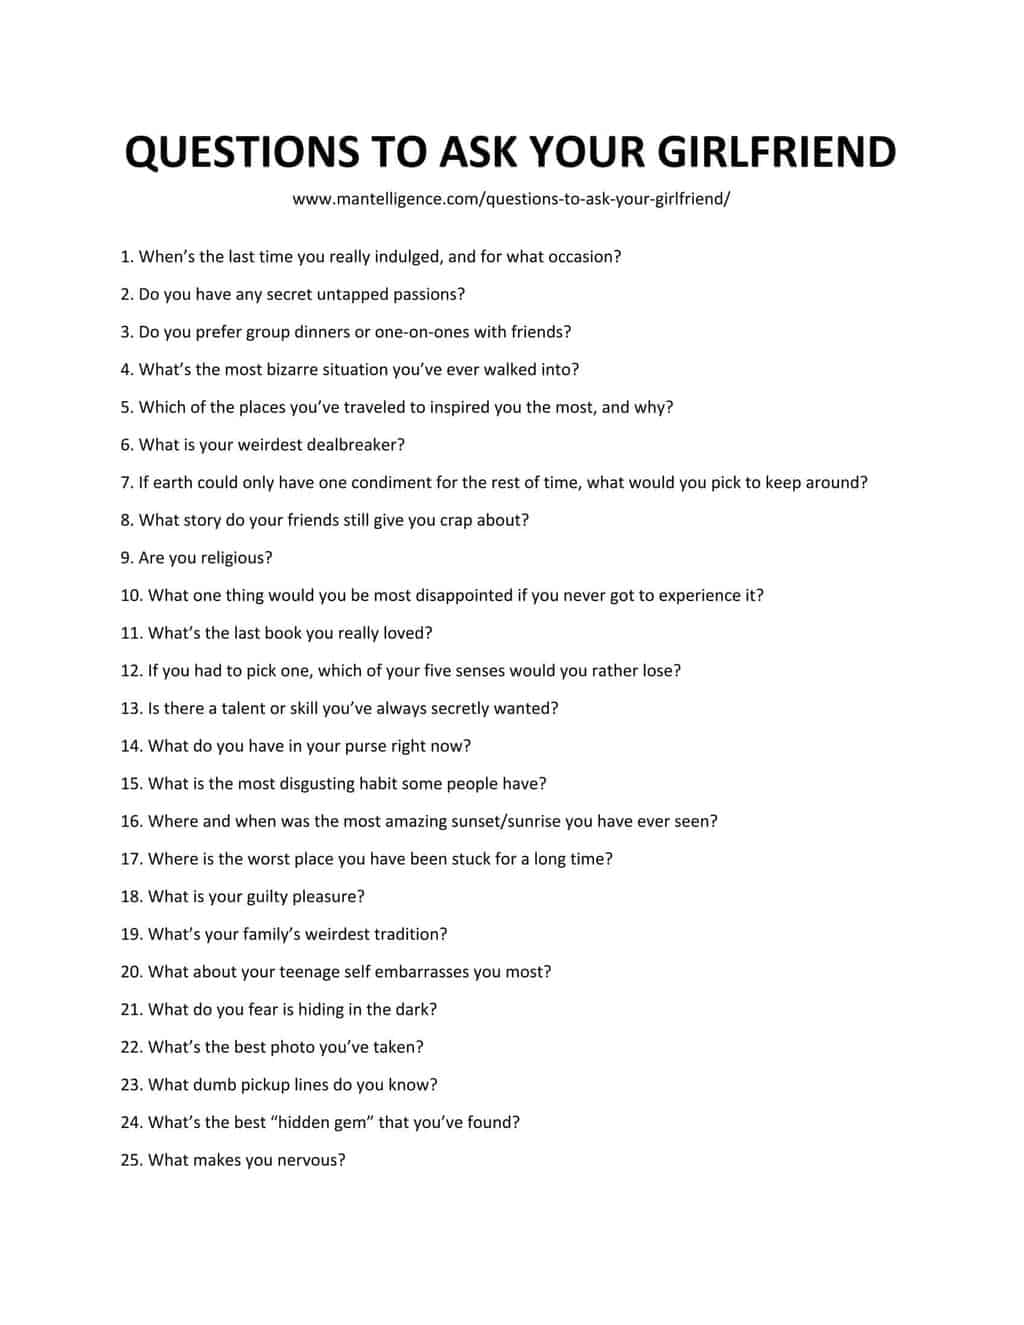 Ask a girlfriend